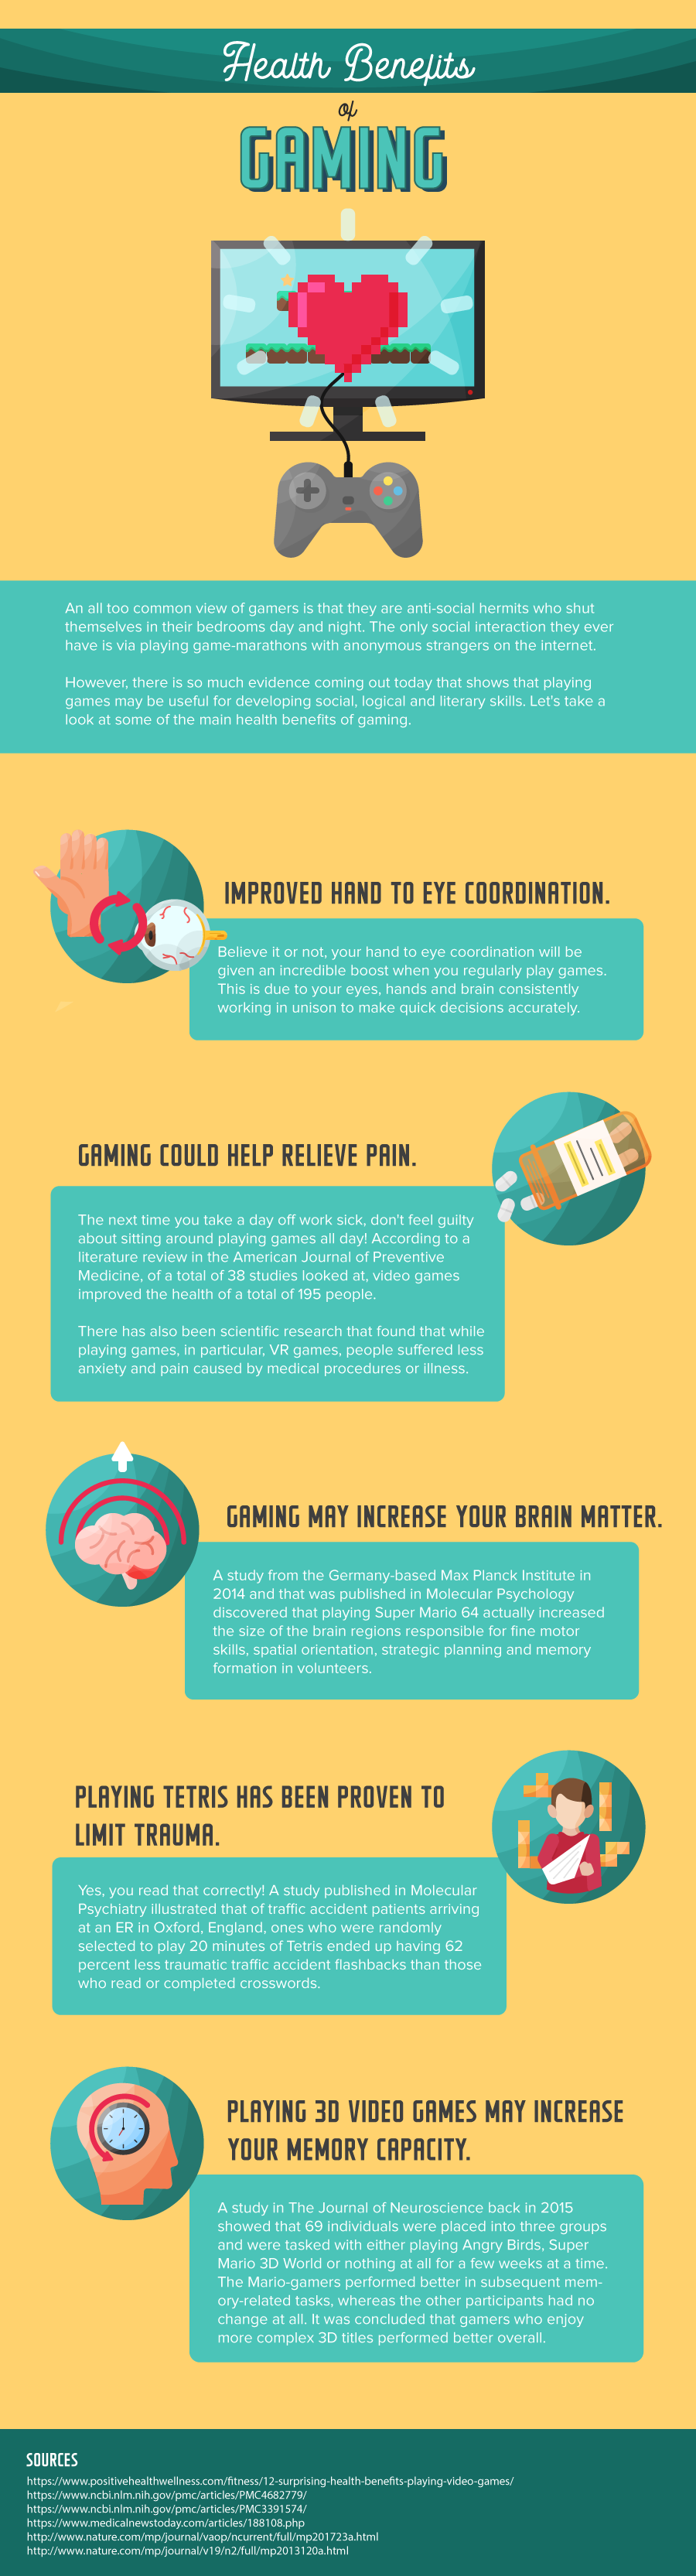 health benefits of gaming - Health Benefits of Gaming